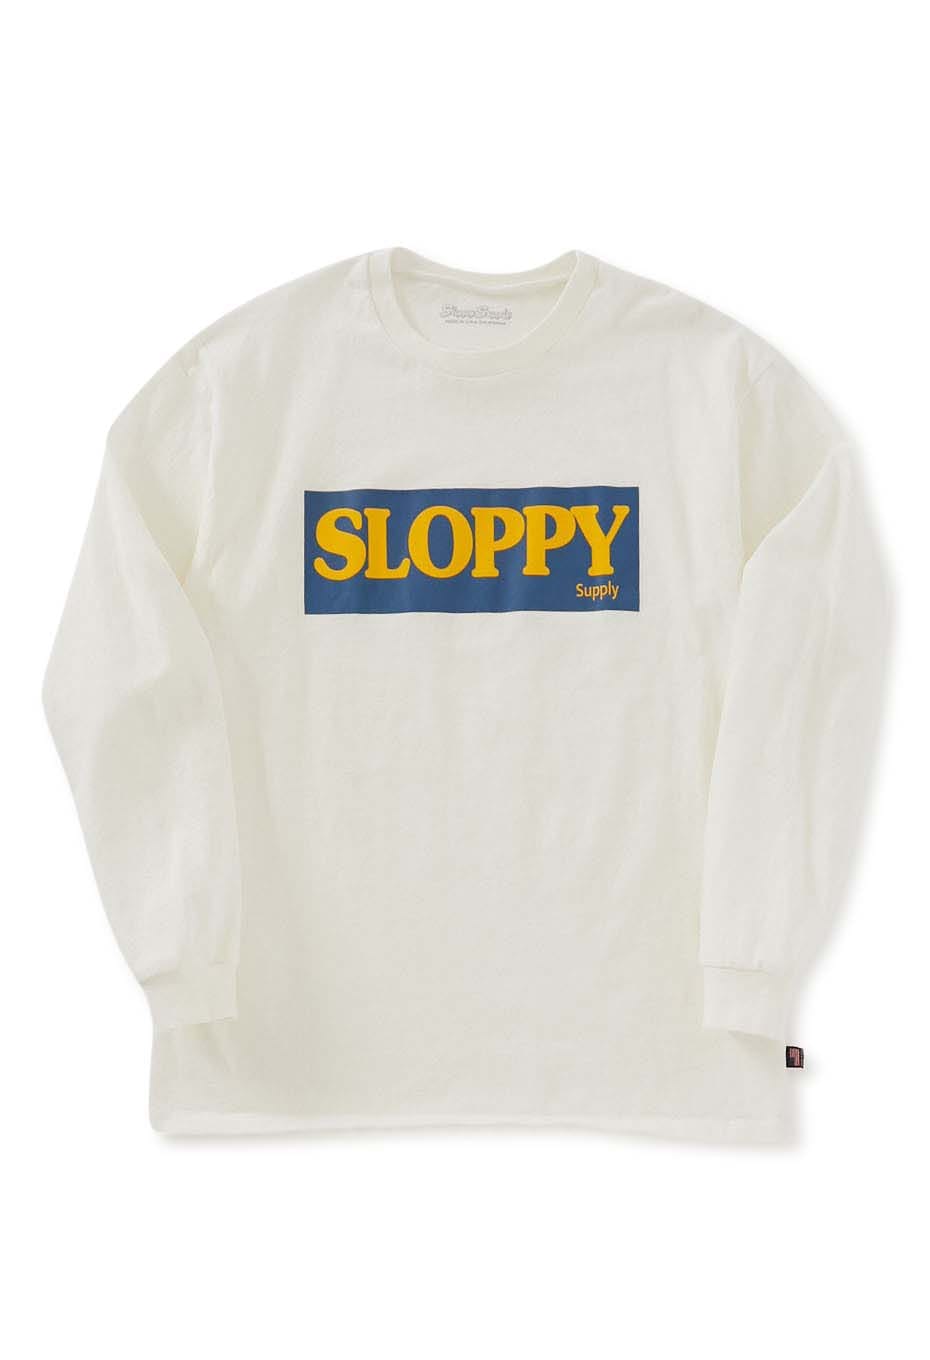 SLOPPY SUPPLY /SLOPPY HAM ロングスリーブTシャツ